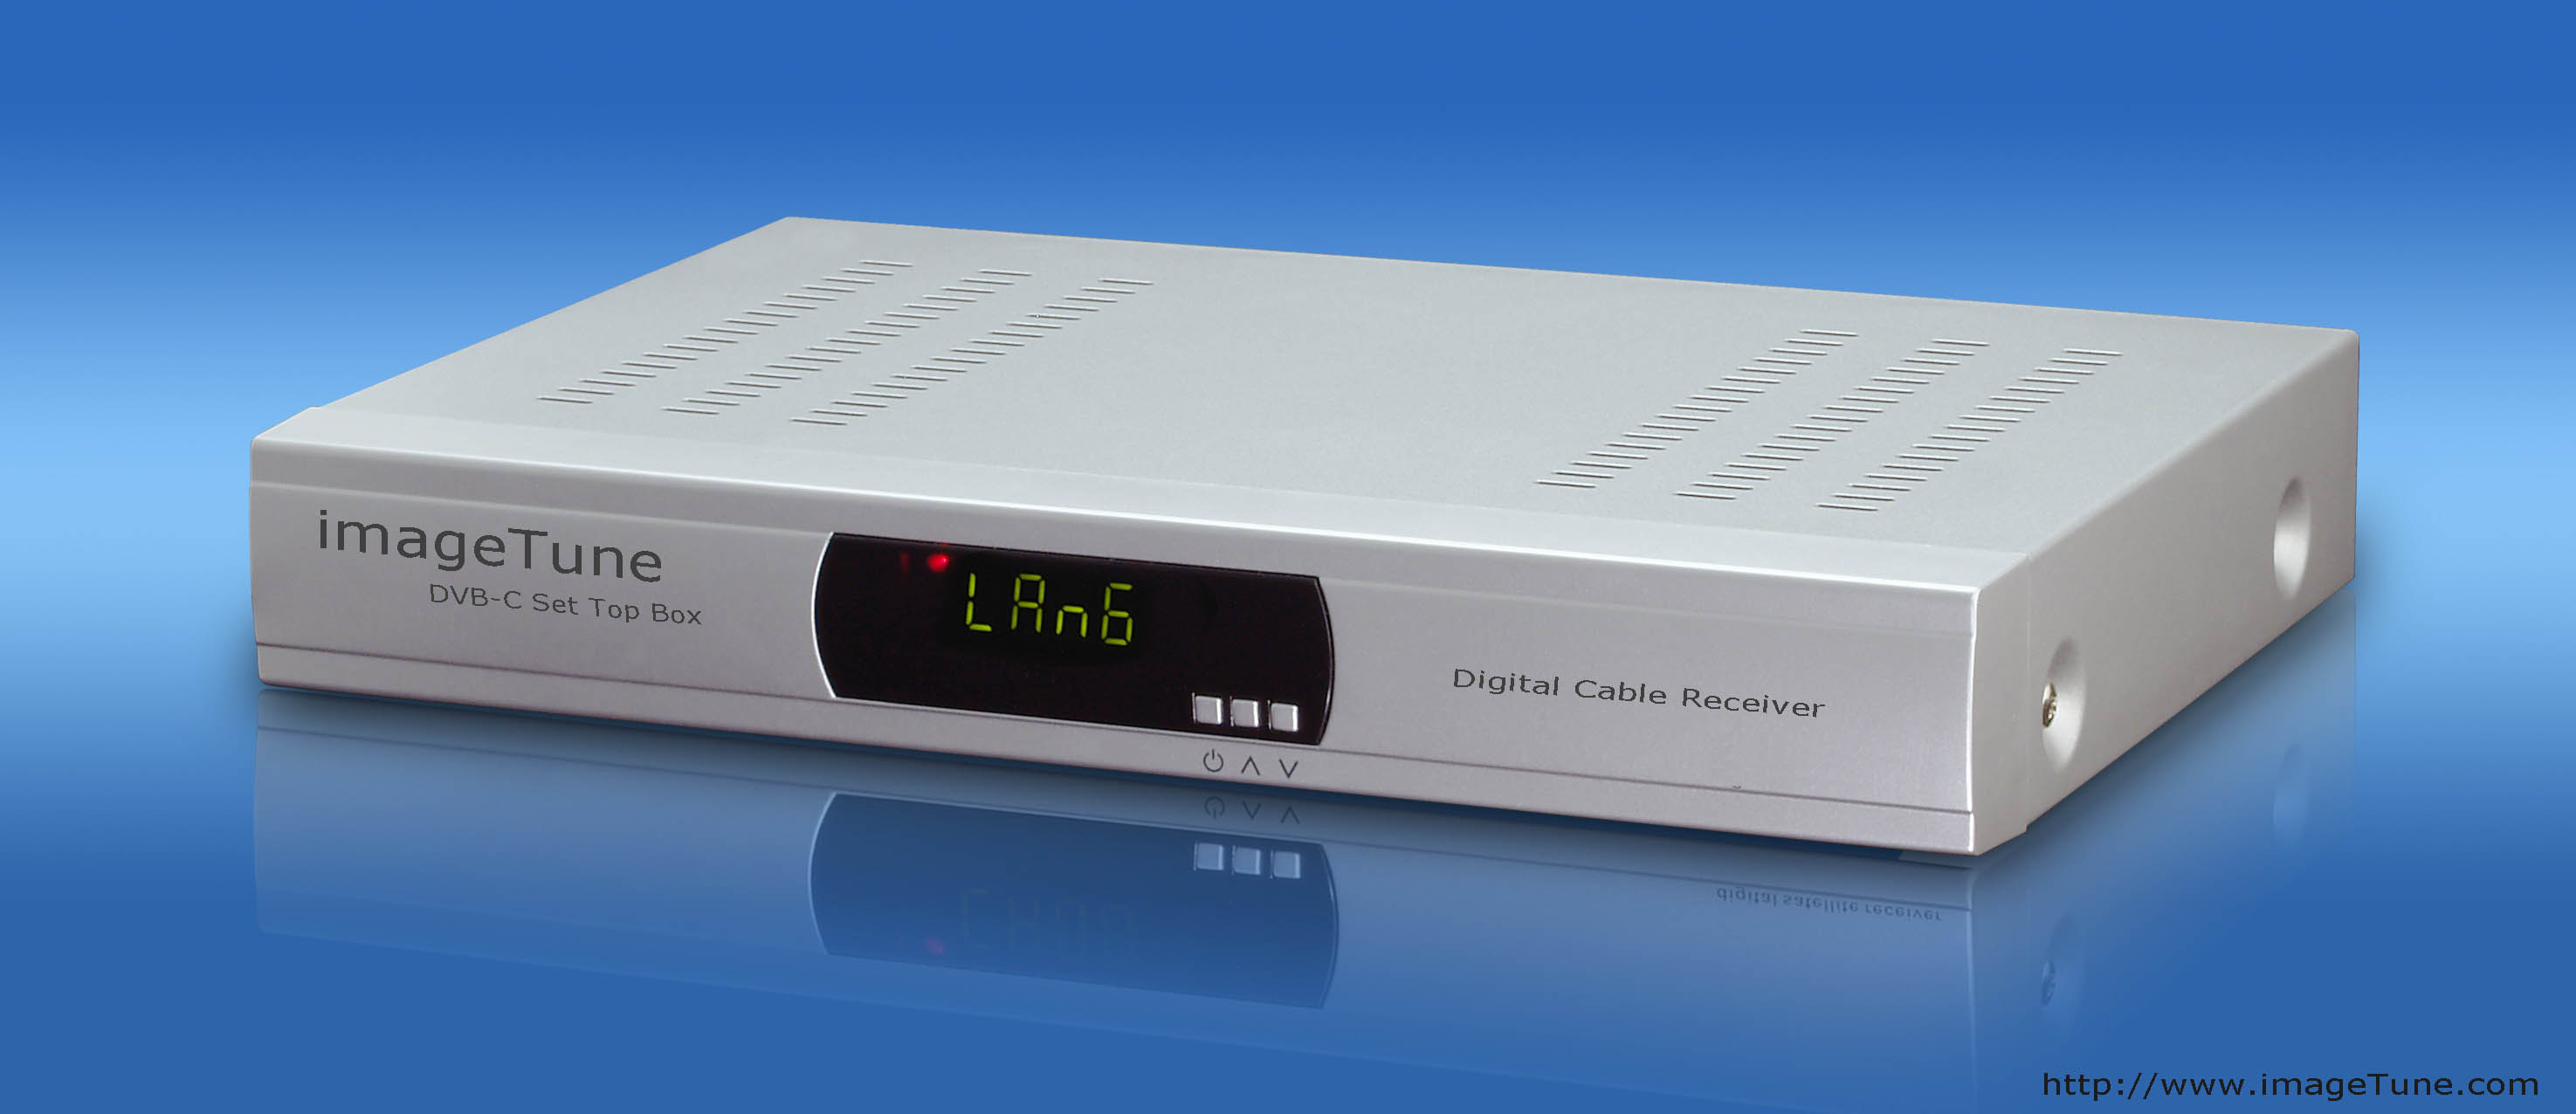 DVB-C 有線數位電視機頂盒